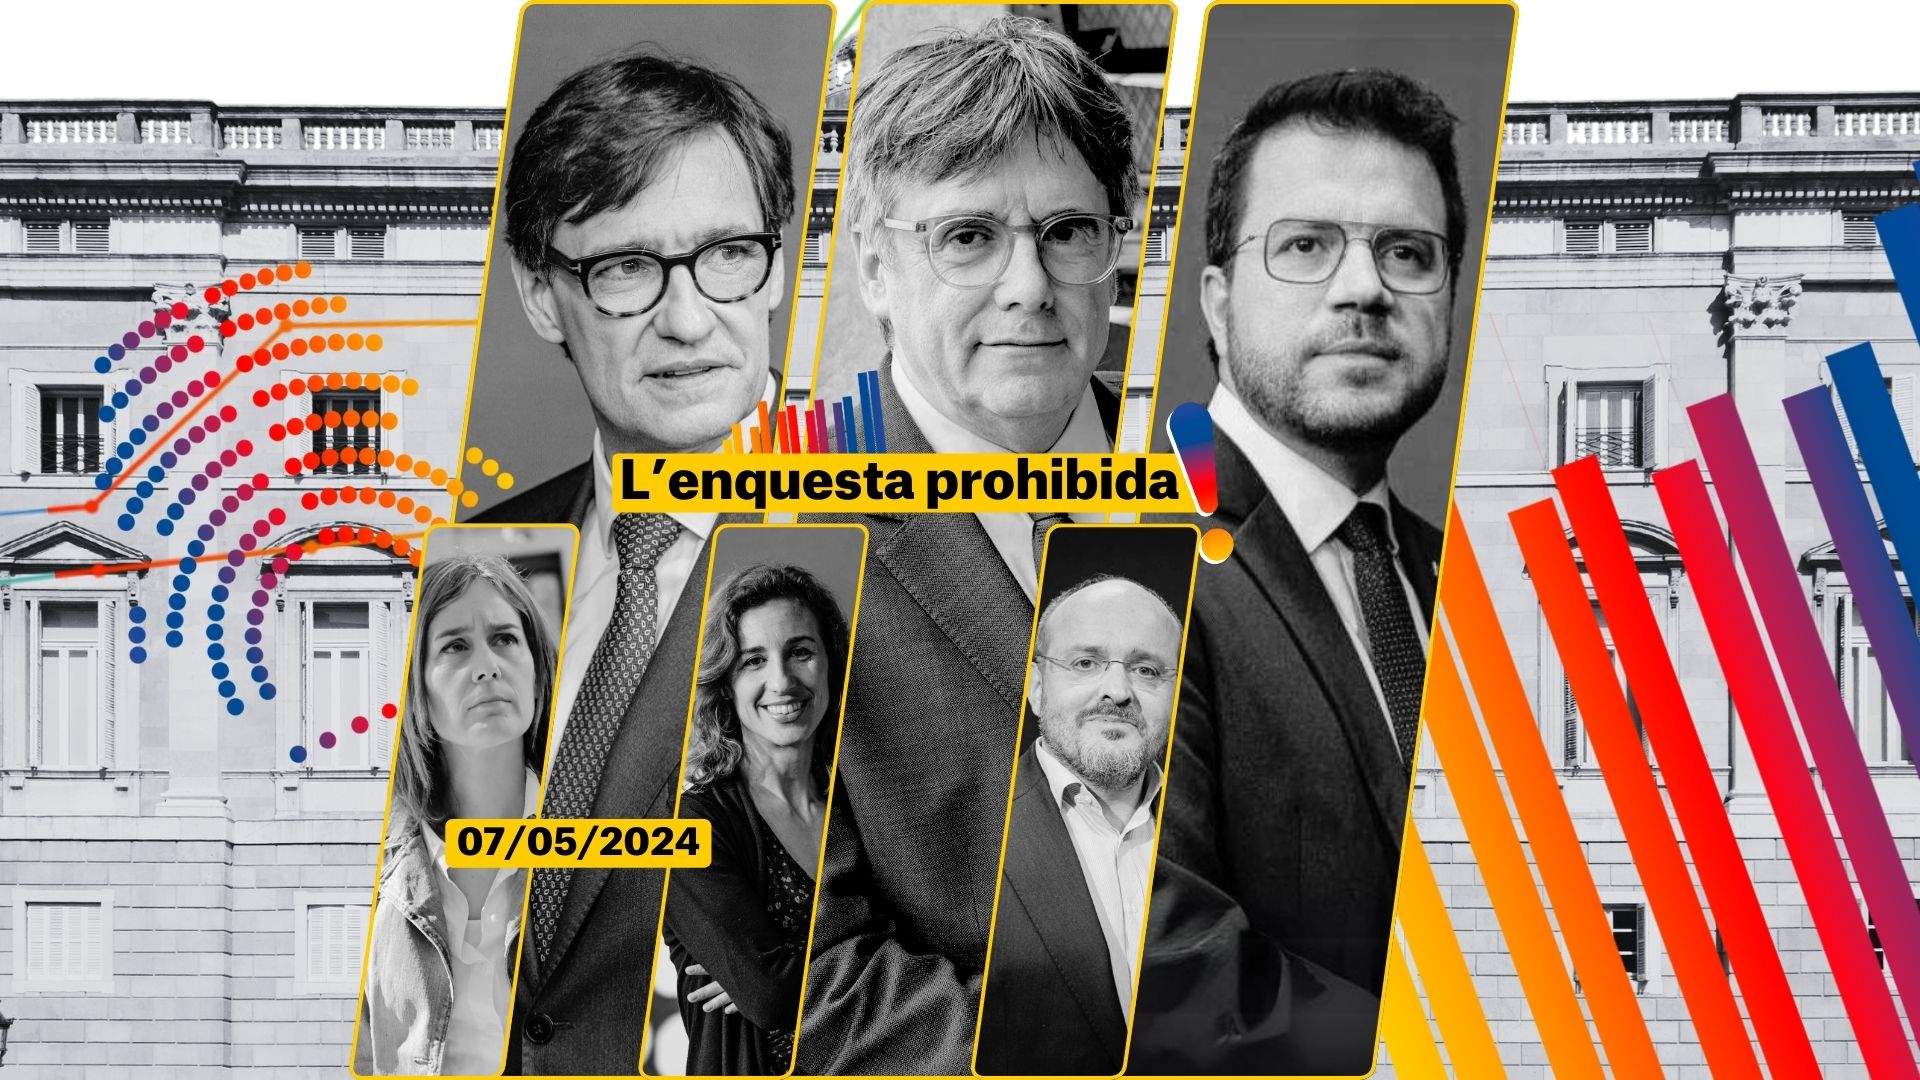 Enquesta eleccions Catalunya 2024   Enquesta prohibida 7 maig